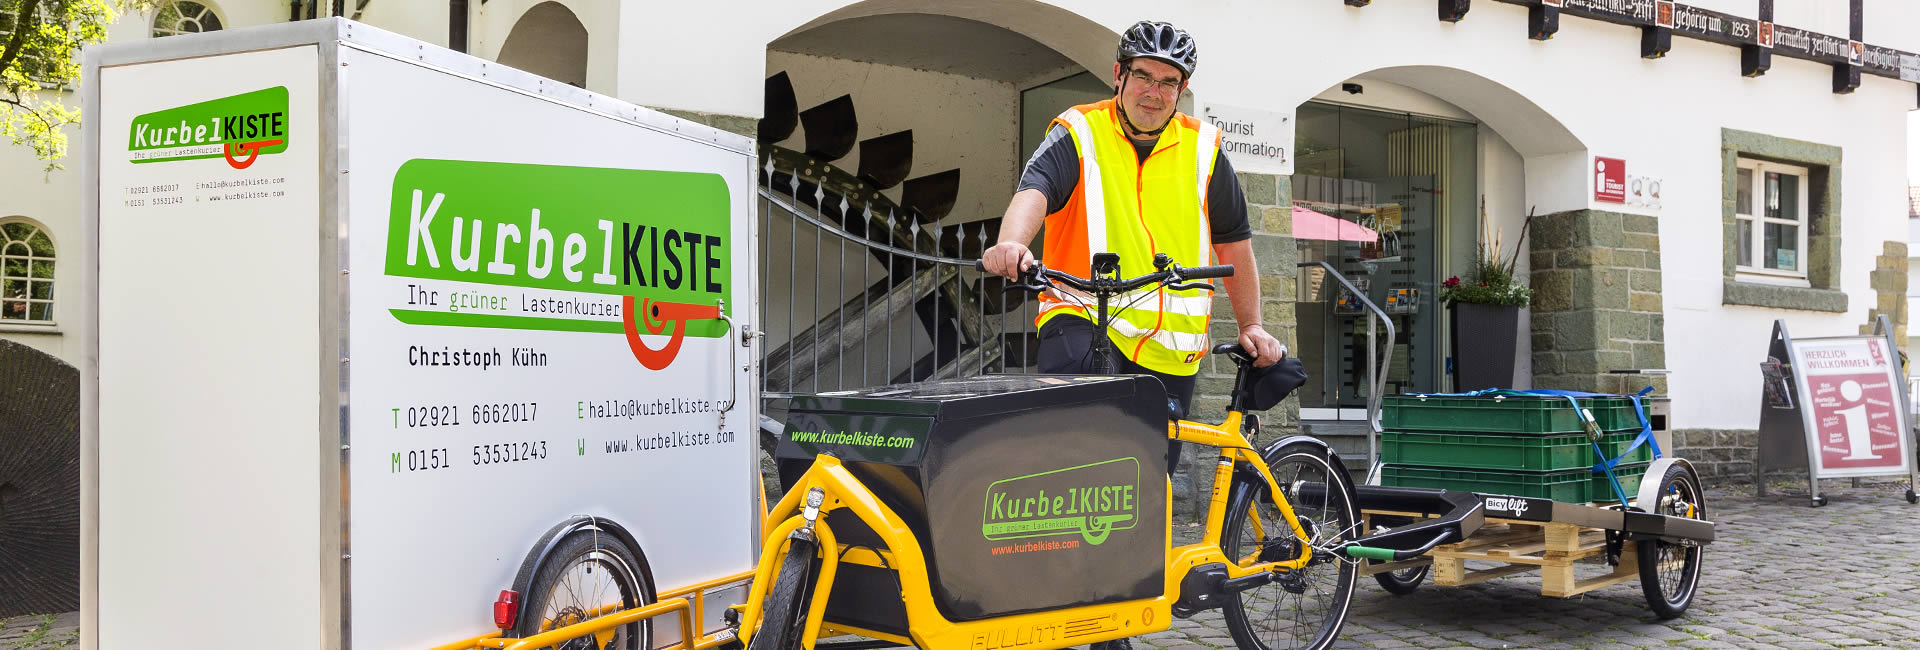 KurbelKiste - Ihr grüner Lastenkurier in Soest | Paket- und Warenlieferungen + Postfachleerungen + Dokumentenzustellungen + Logistikberatung